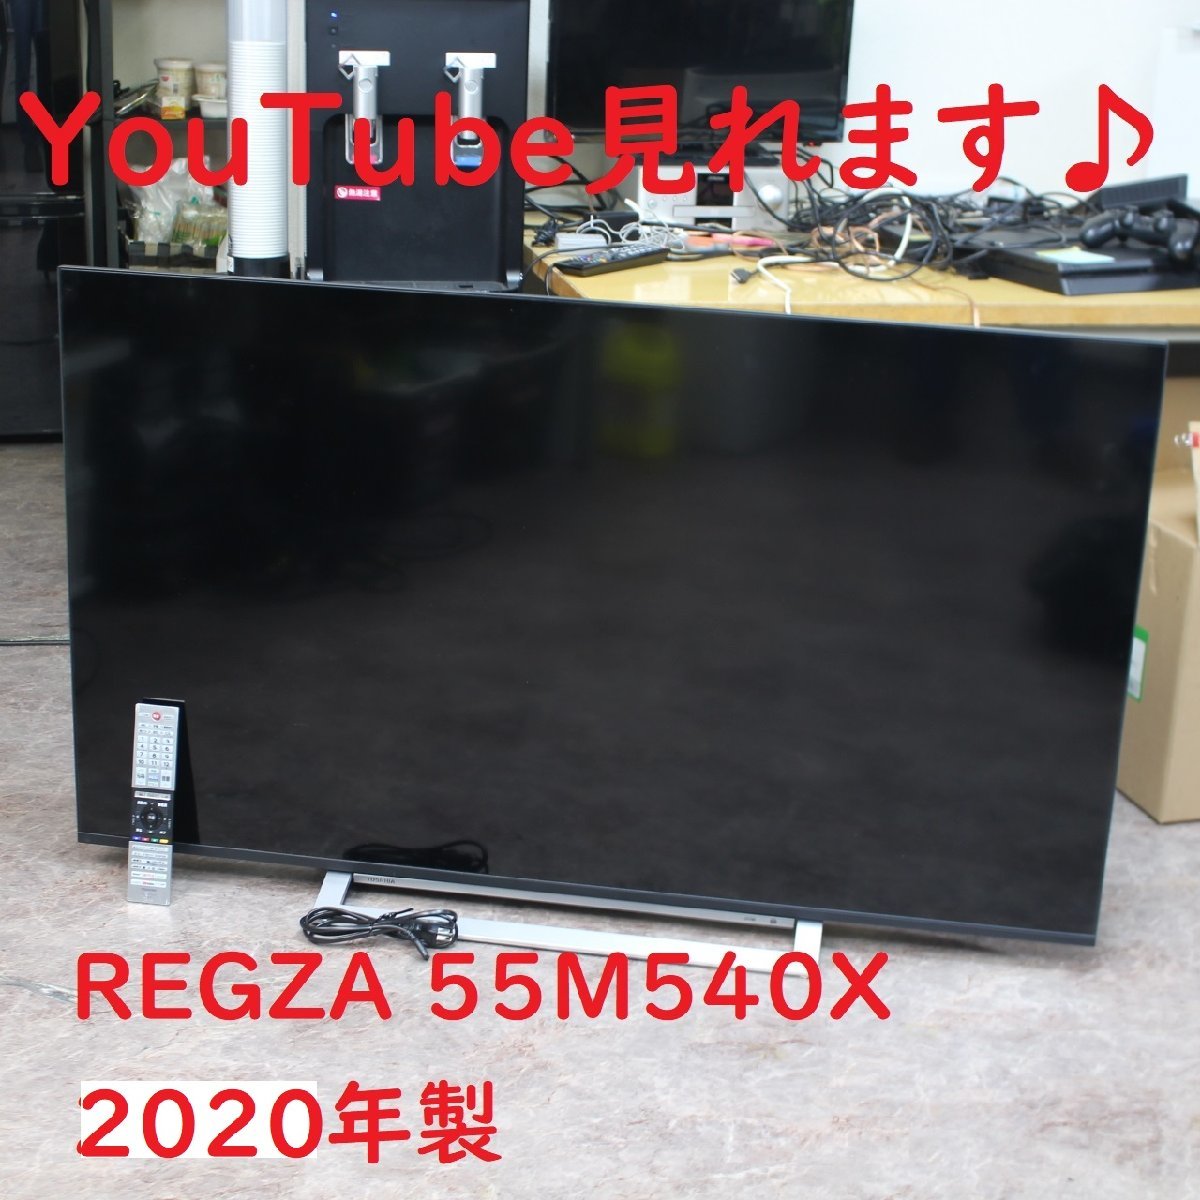 川崎市高津区にて 東芝 4K 液晶テレビ 55M540X 2020年製 を出張買取させて頂きました。